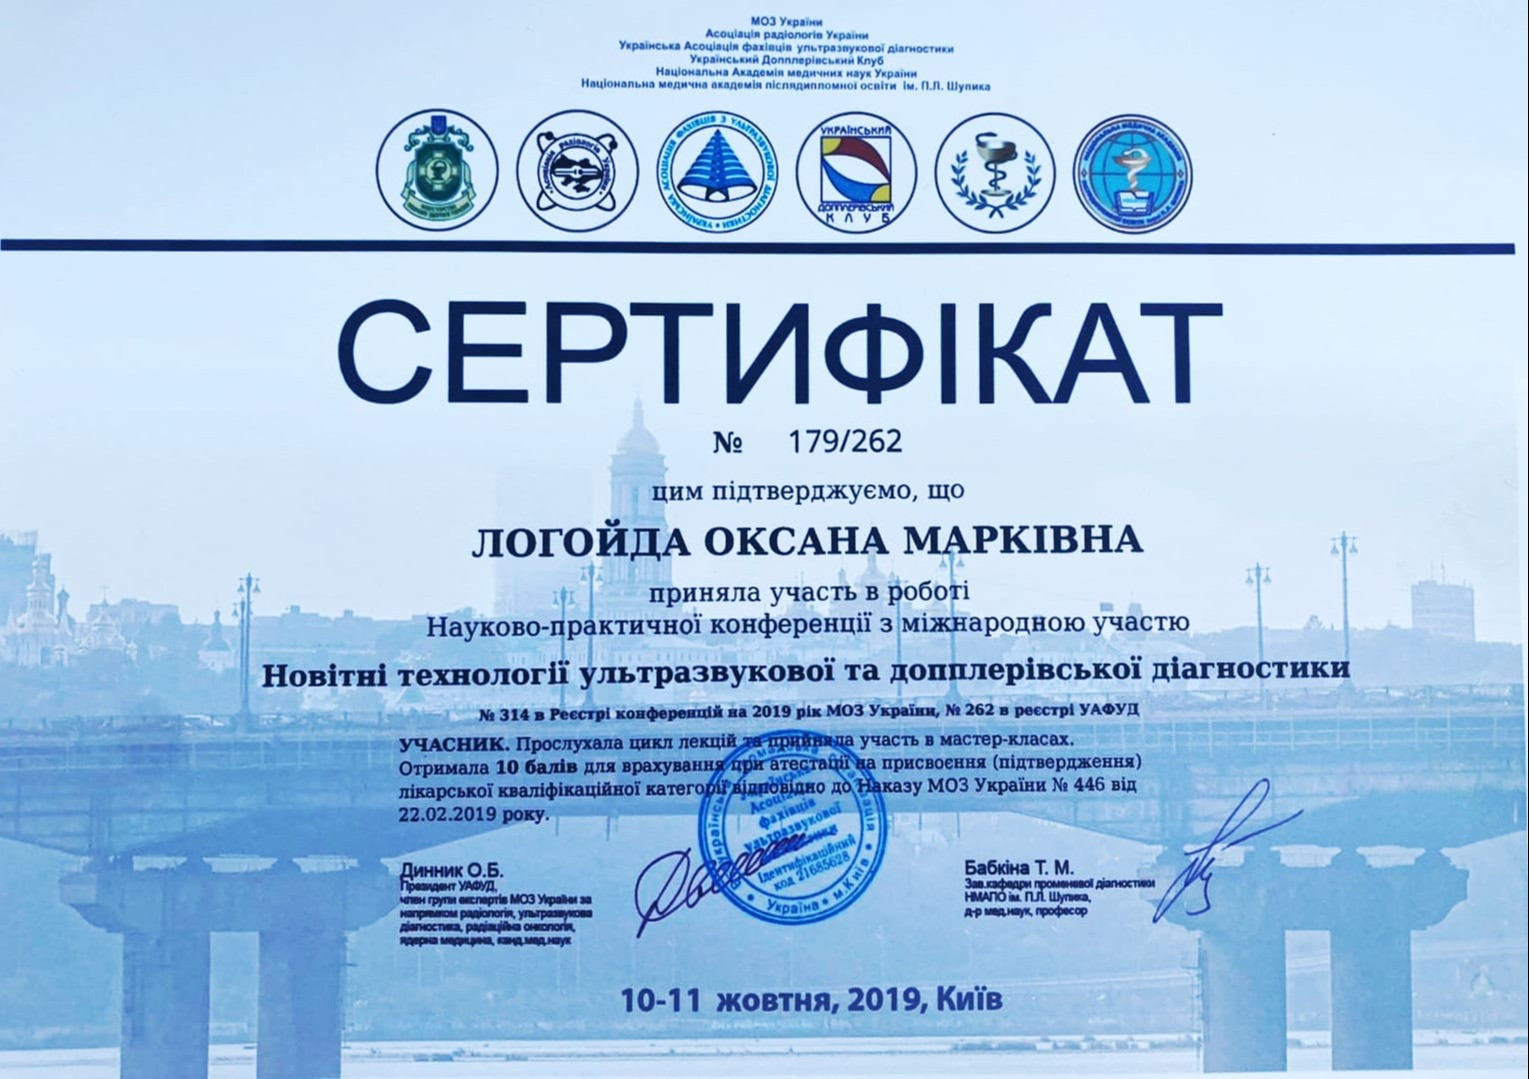 Сертификат об участии в работе научно-практической конференции с международным участием